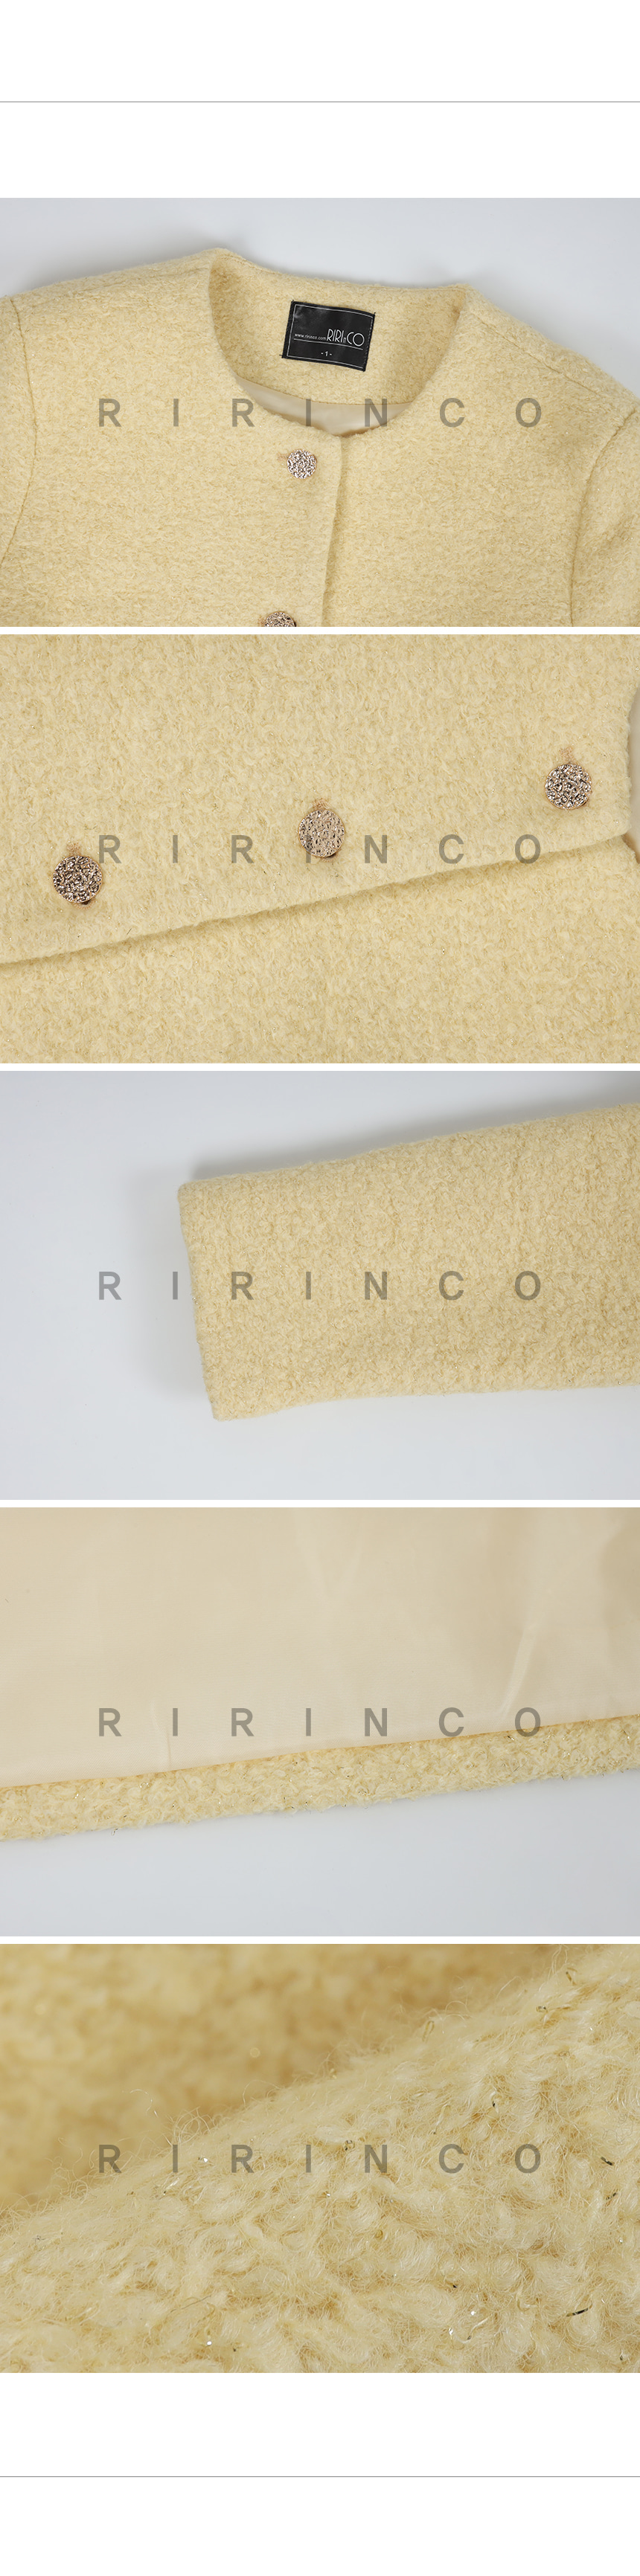 RIRINCO (ウール40%) ツイードセミクロップドジャケット